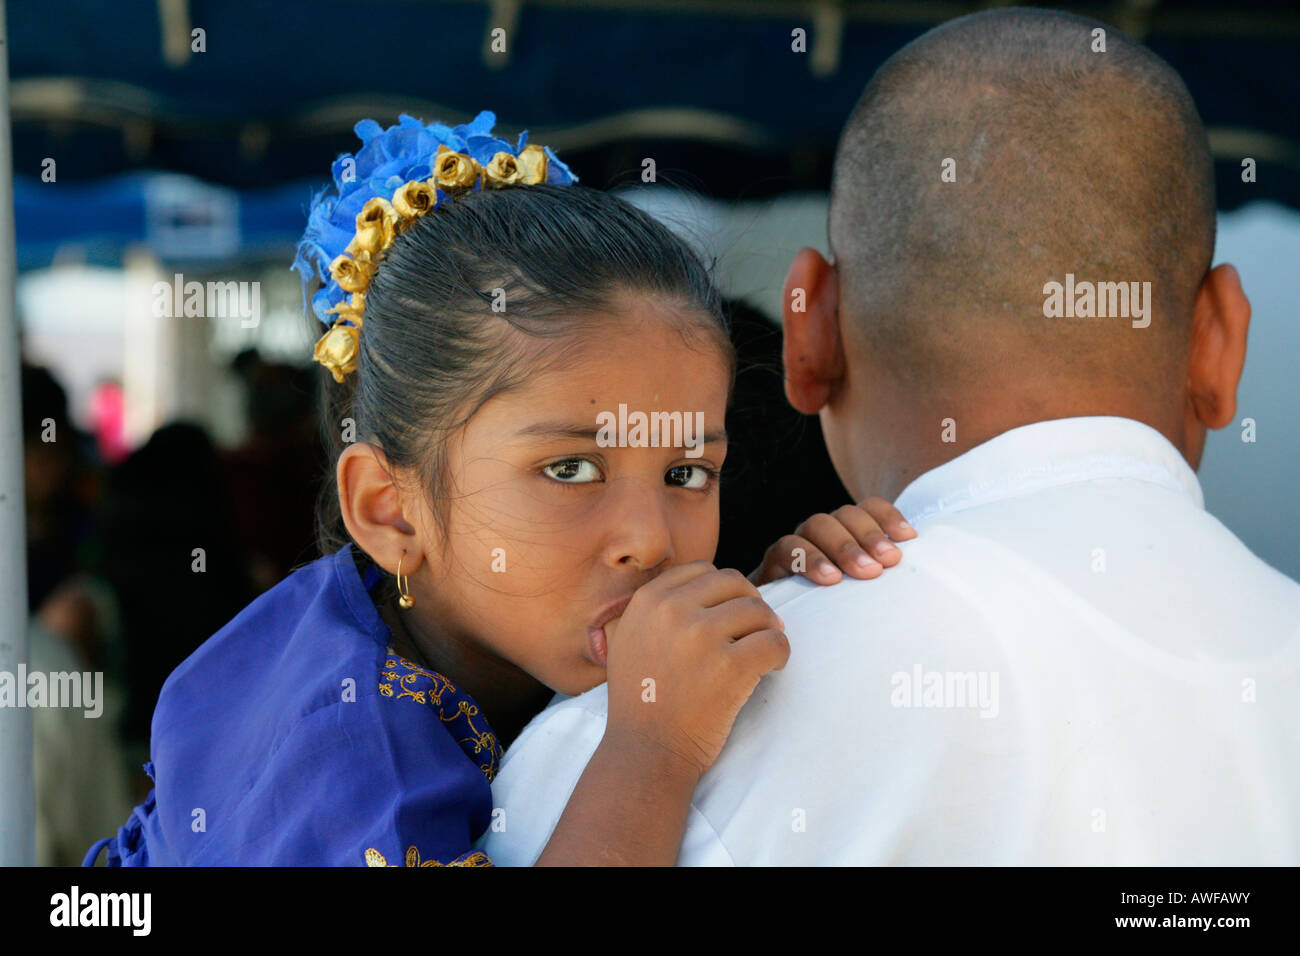 Fille de l'ethnie indienne détenus dans les bras de son père lors d'une fête hindoue, Georgetown, Guyana, en Amérique du Sud Banque D'Images